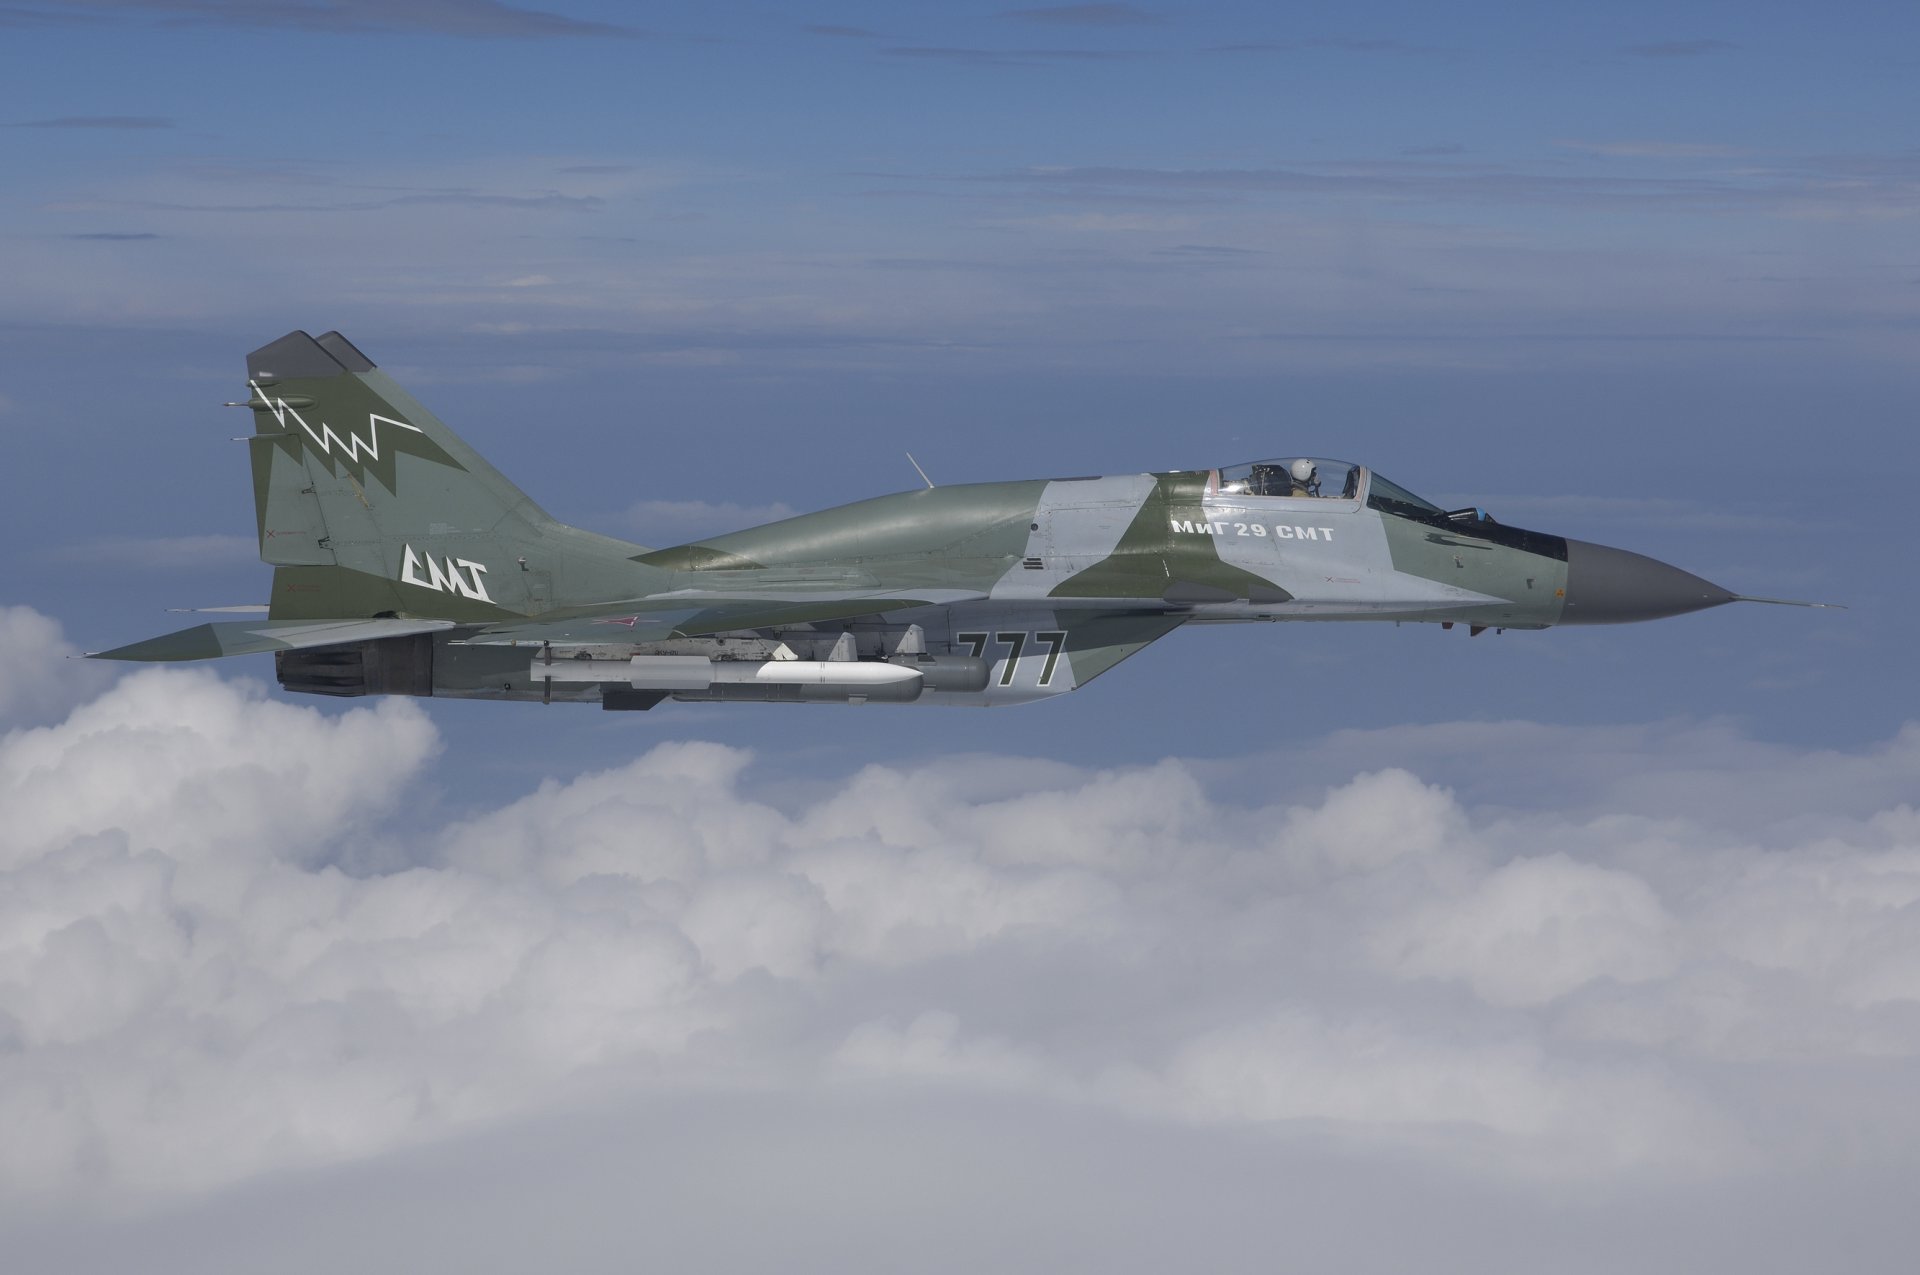 mig-29sмт ввс россии миг-29смт многофункциональный истребитель поколения 4+ полет ракеты облака